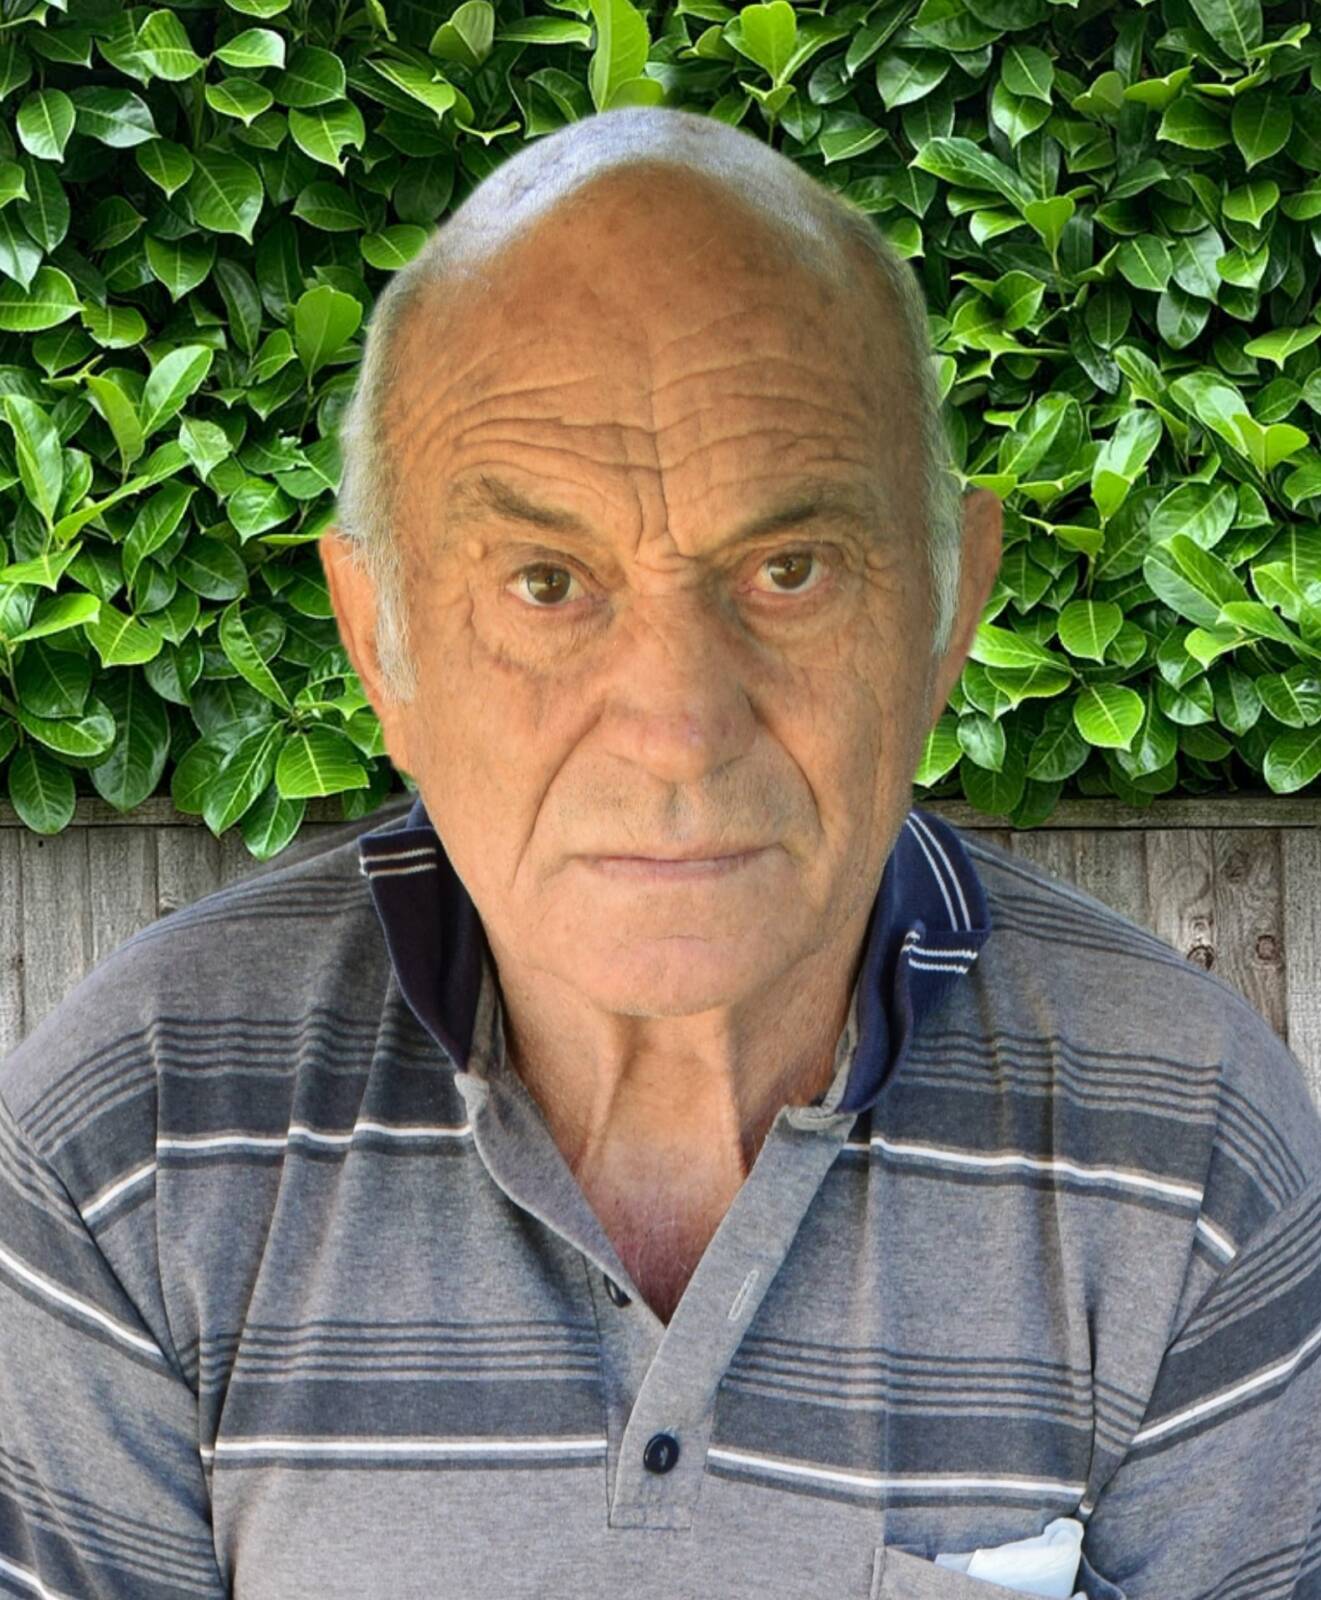 Έφυγε από την ζωή ο Γεώργιος Διαμαντής σε ηλικία 72 ετών – Η κηδεία θα τελεστεί την Τετάρτη 6 Δεκεμβρίου